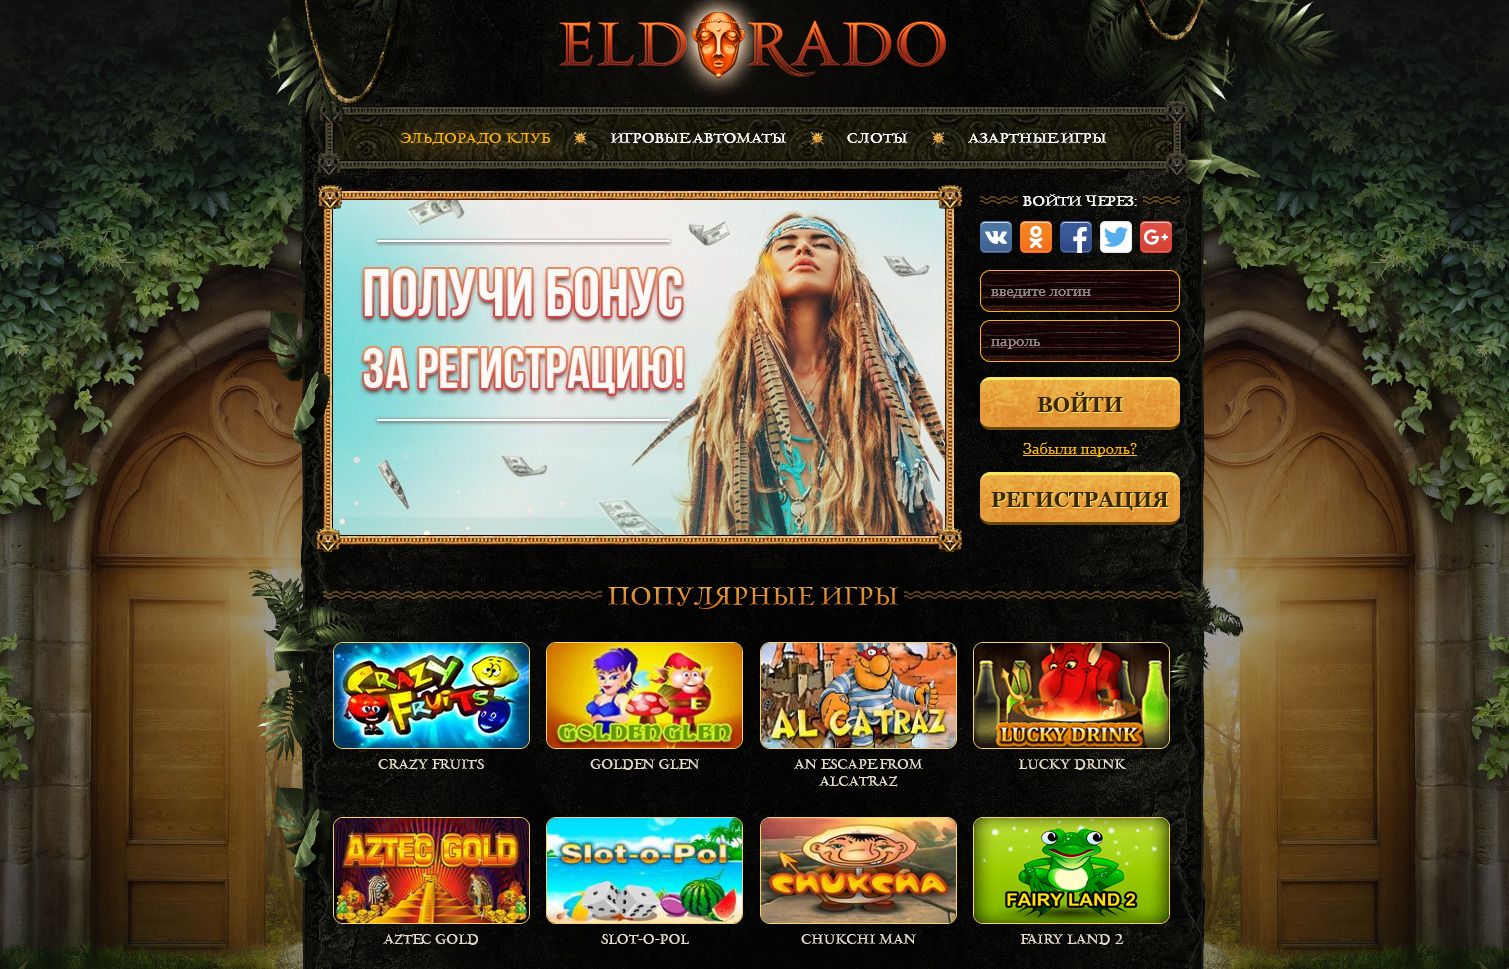 Казино Эльдорадо - игровые автоматы бесплатно и без регистрации